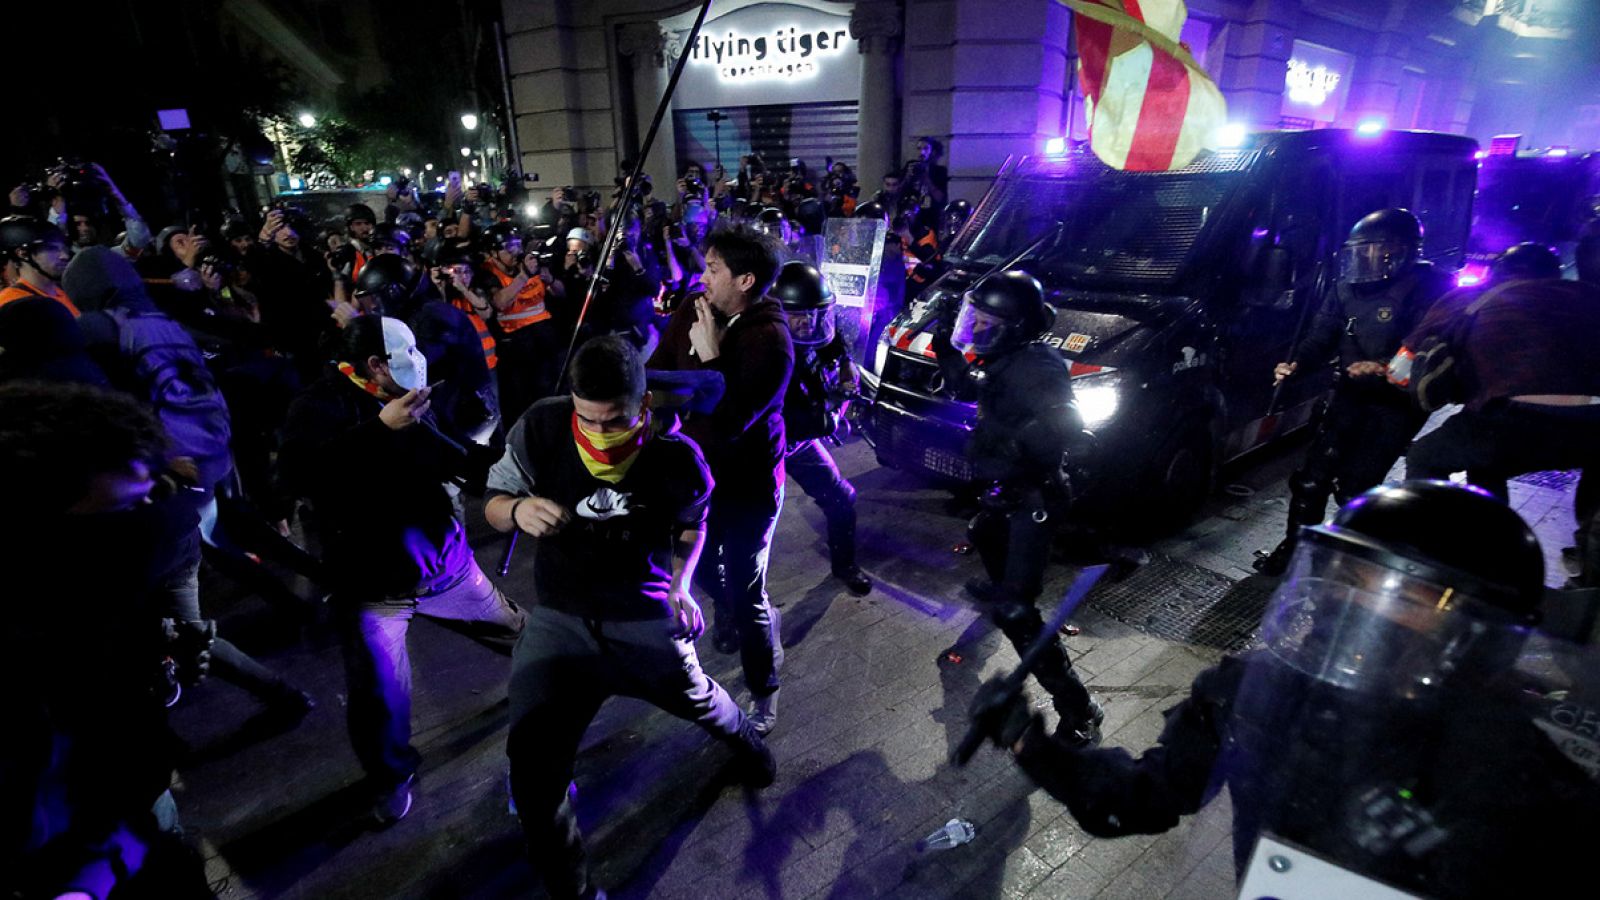 La protesta de los CDR acabó con choques entre agentes y manifestantes - RTVE.es